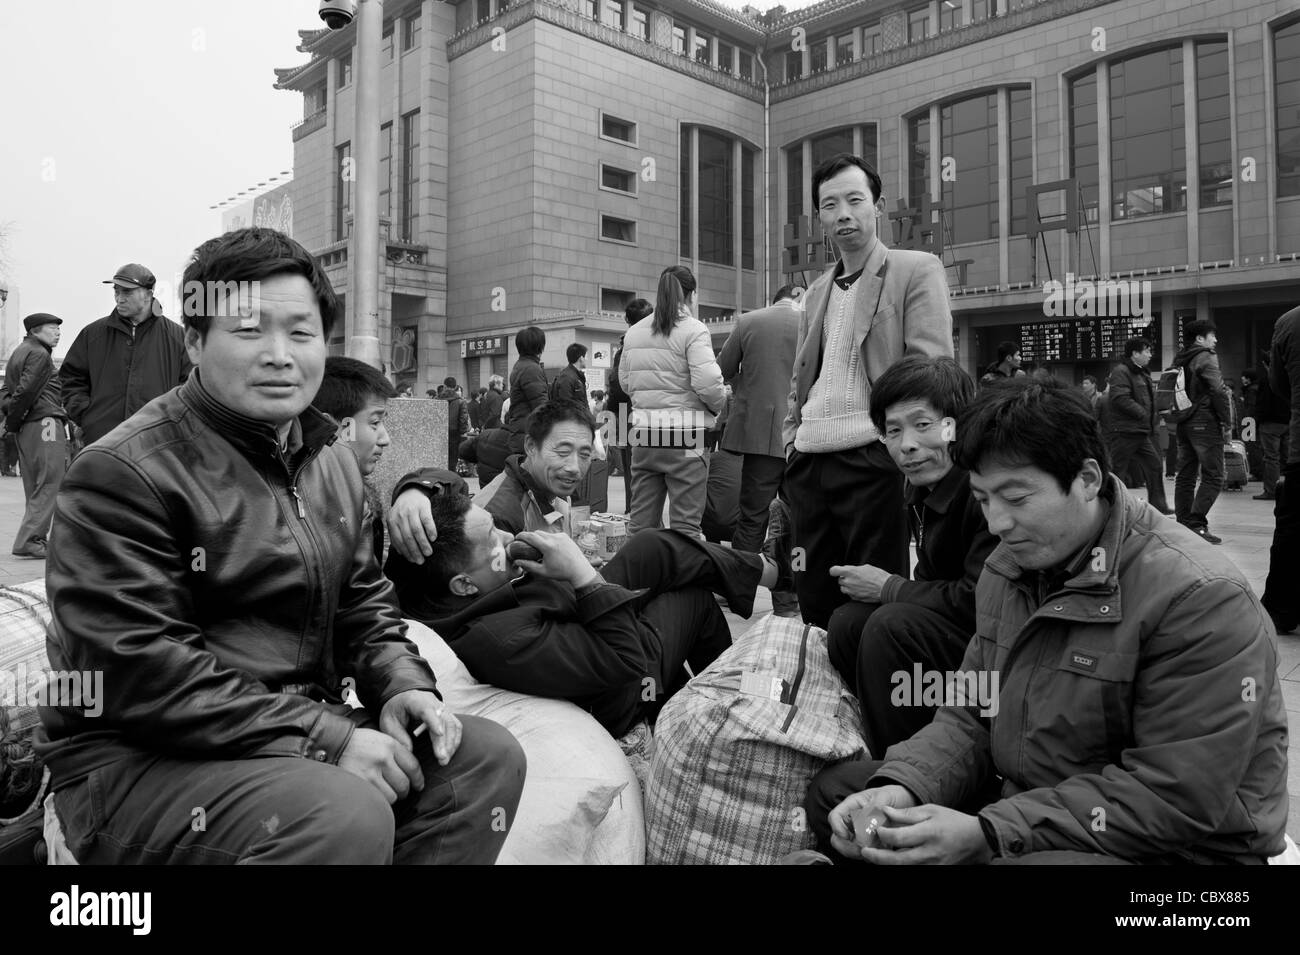 Pechino. I lavoratori migranti in attesa di un treno nella piazza di fronte alla Stazione Ferroviaria di Pechino. Foto Stock